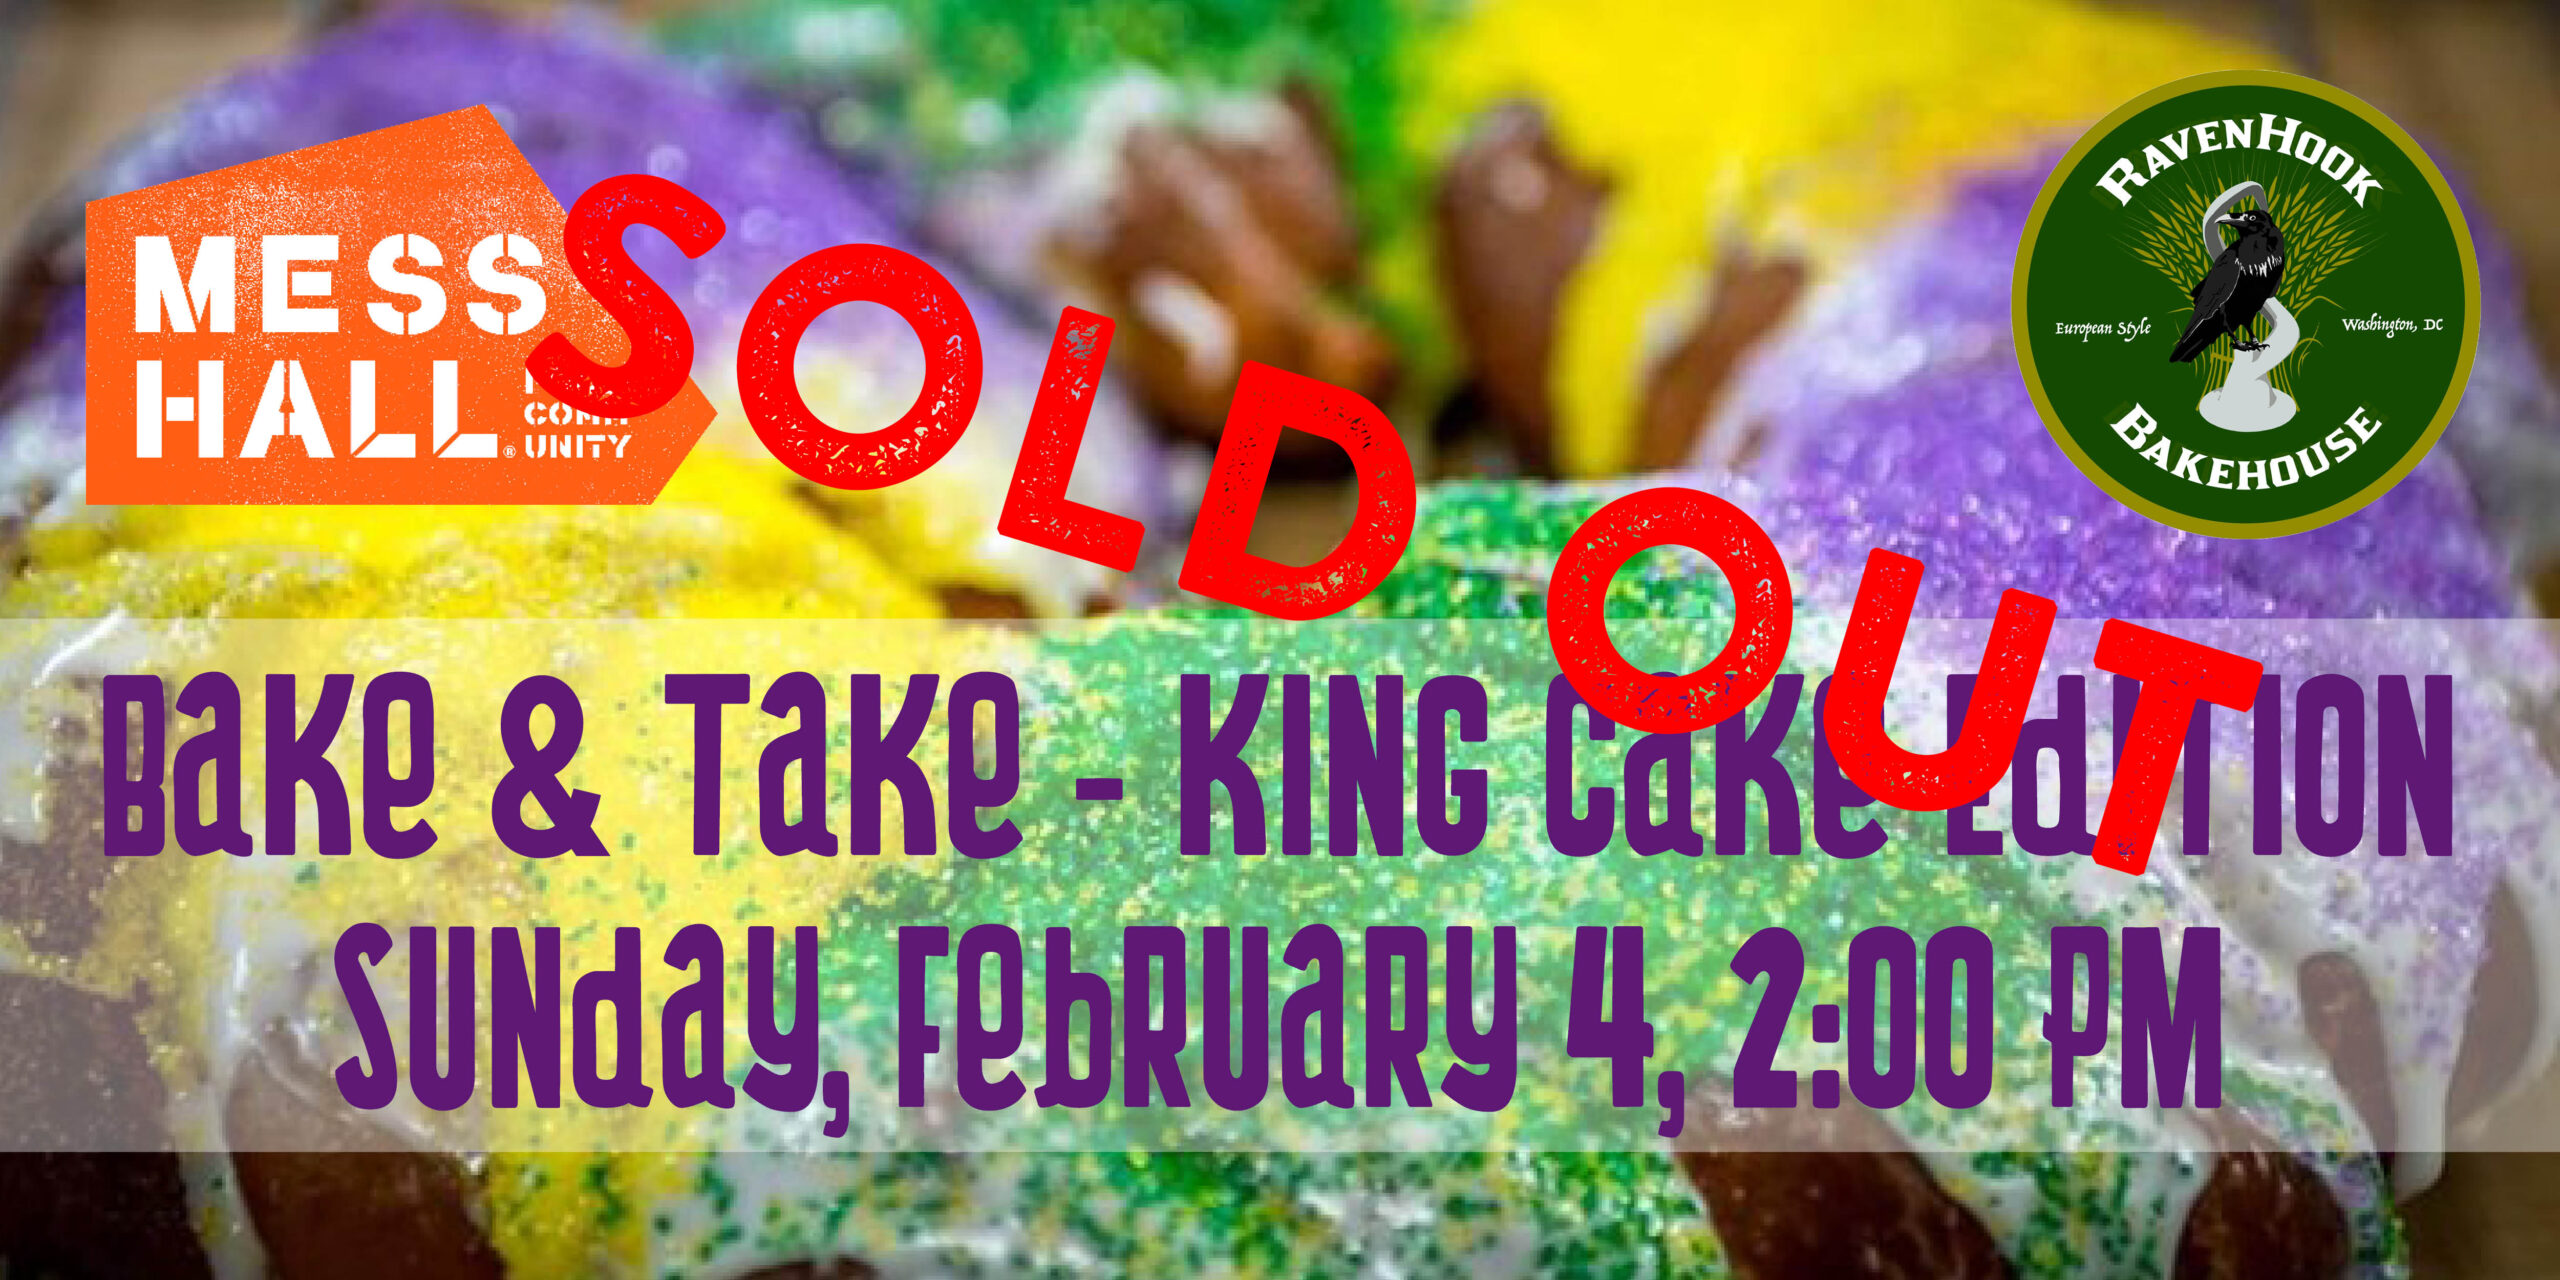 Bake & Take - King Cake Edition!